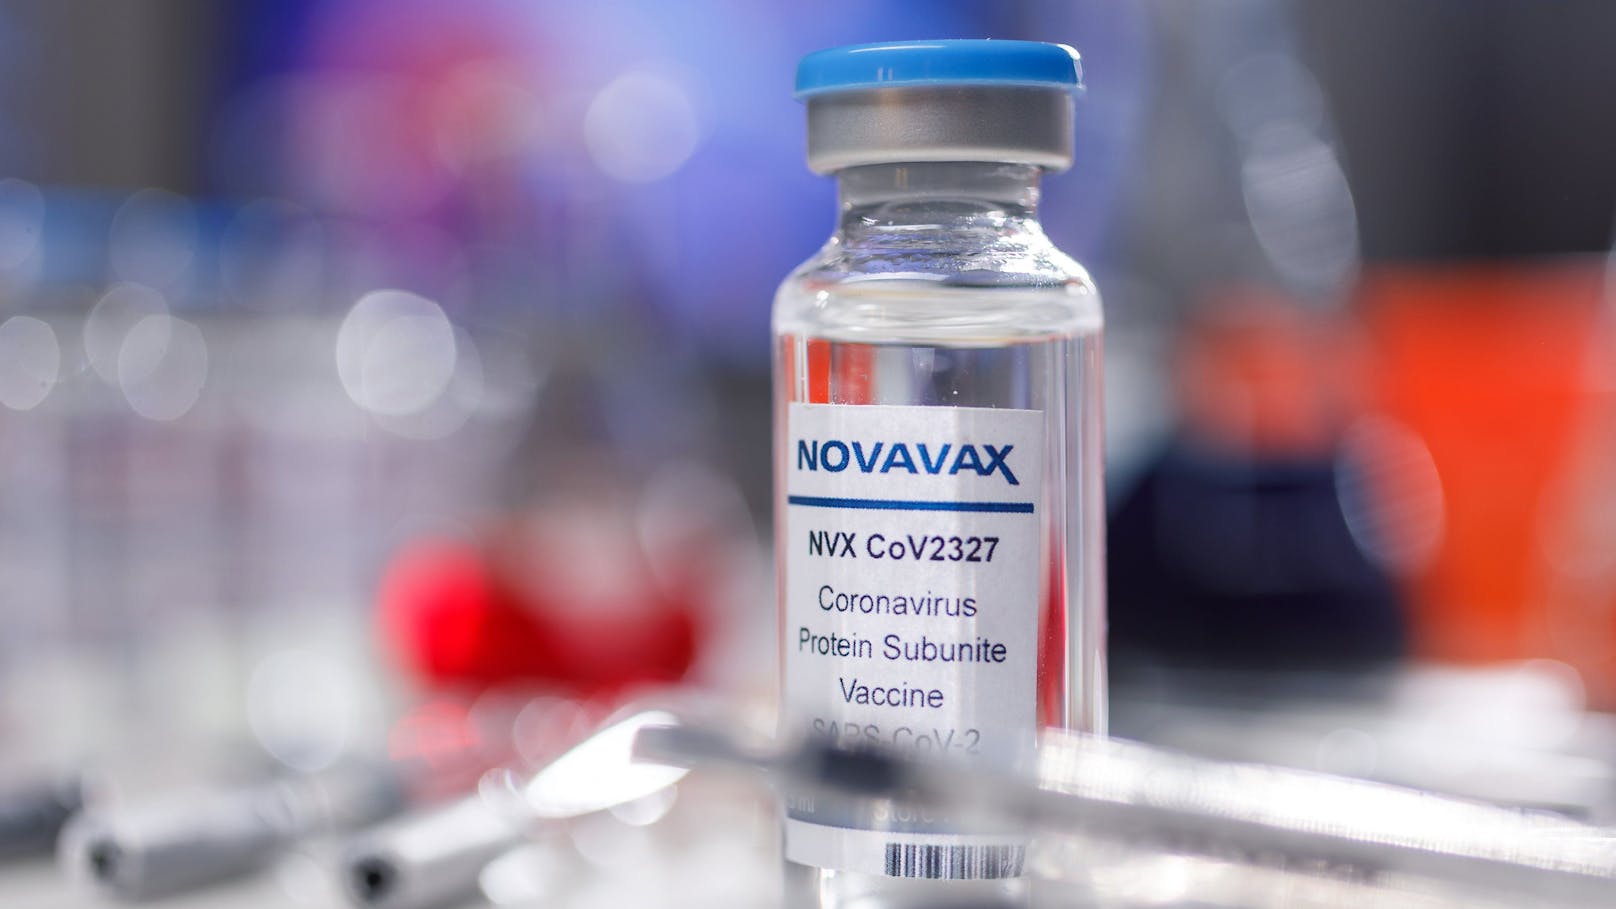 Eine Studie verdeutlicht, dass der Novavax-Impfstoff sich insbesondere als Booster, also als Auffrischungsimpfung gut eignet.